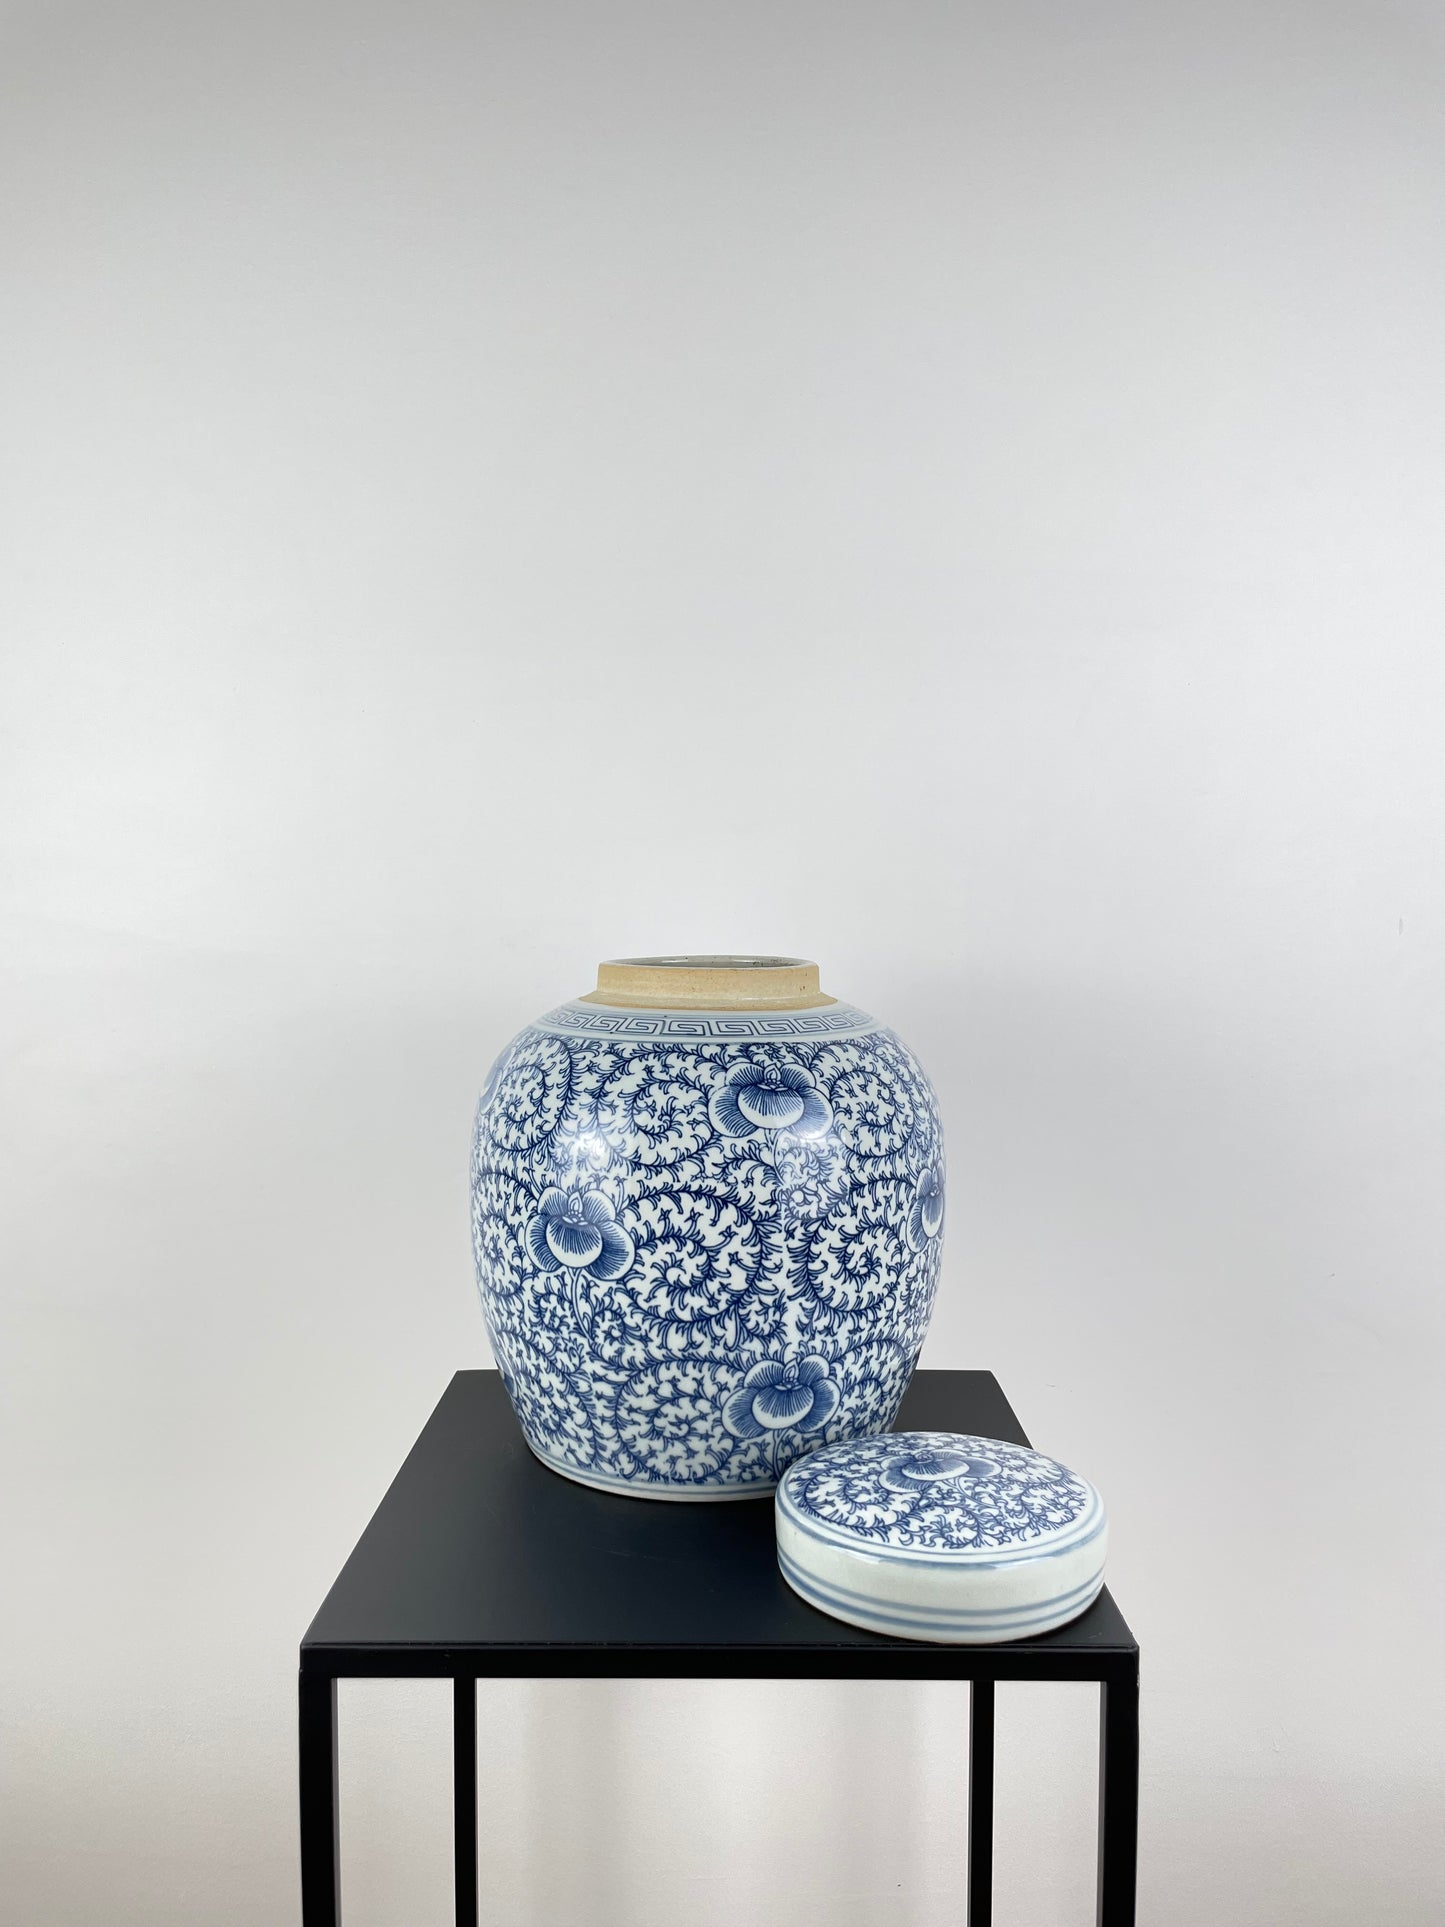 Porzellan Deckelvase, Ingwervase, weiß blau, handbemalt, 22cm